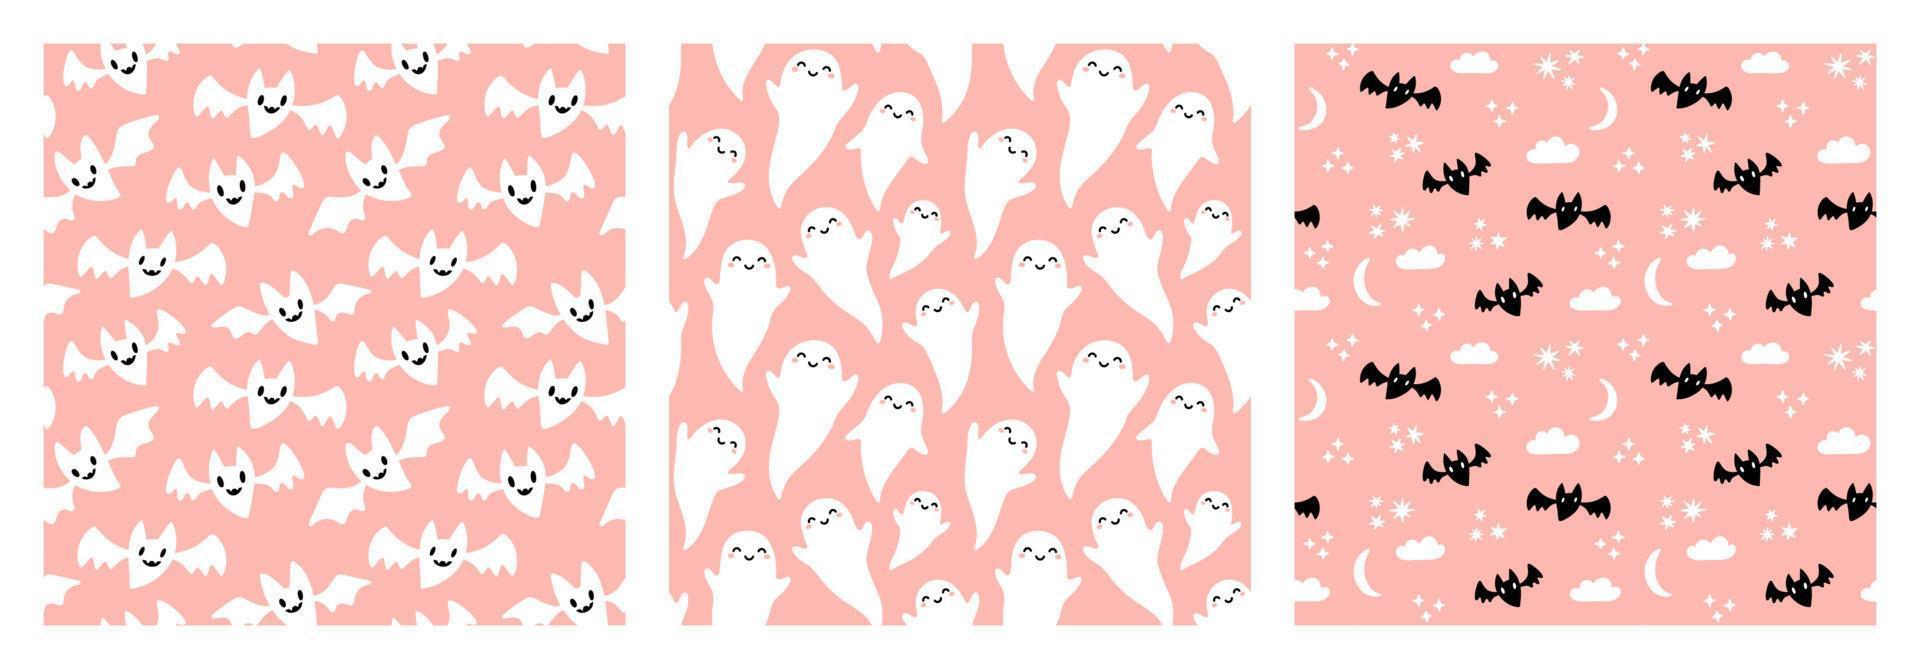 lindos murciélagos y fantasmas en blanco y negro patrón sin costuras de halloween sobre fondo rosa pastel. vector